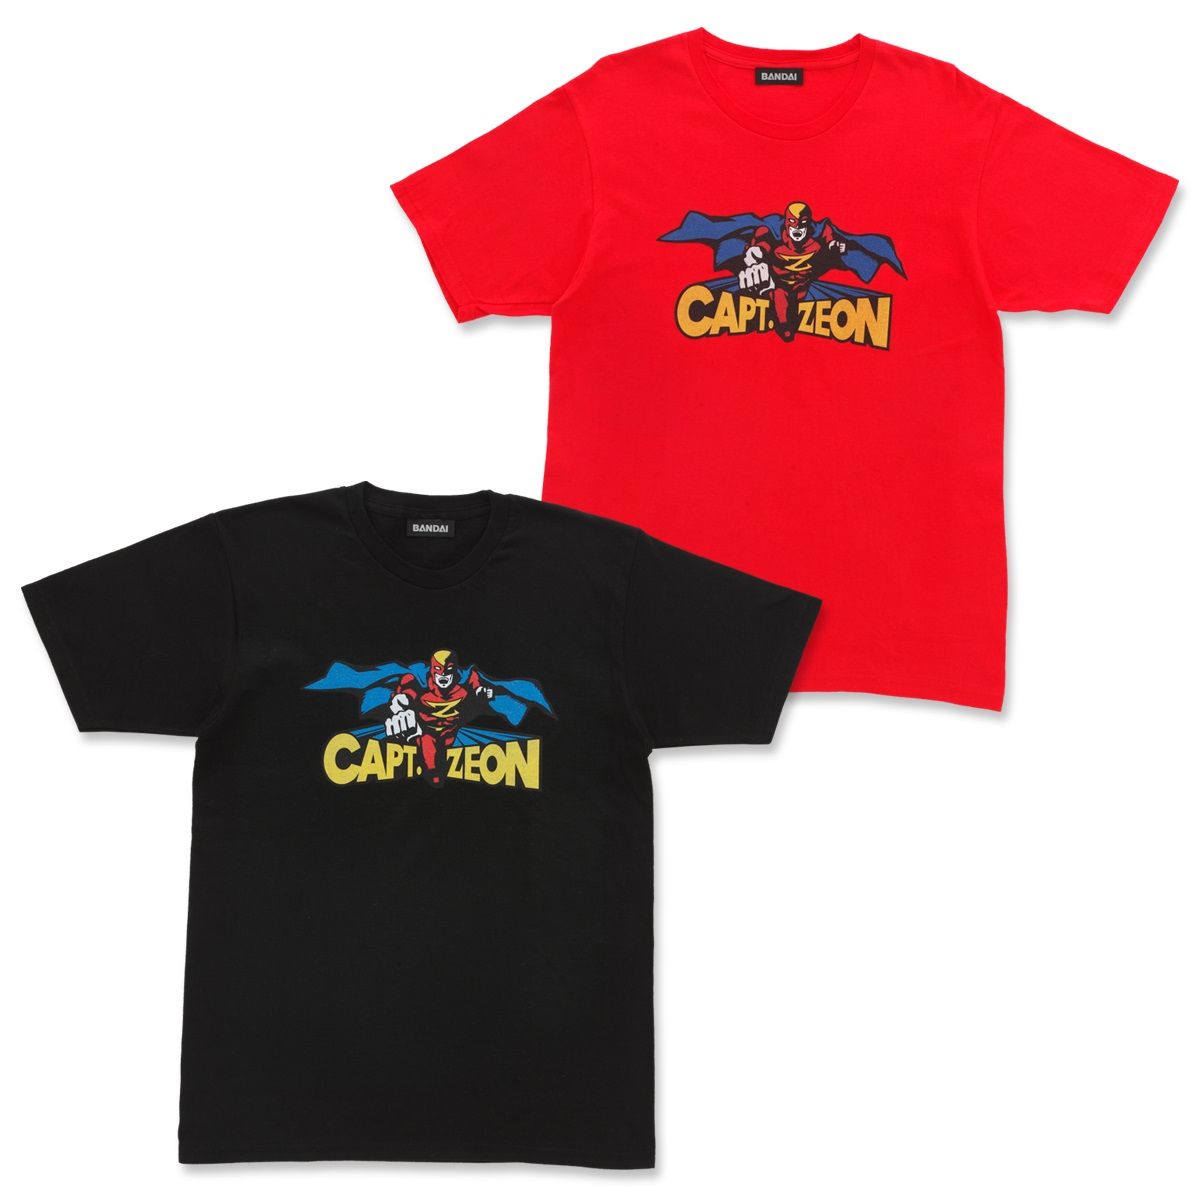 ガンダムビルドダイバーズre Rise Tシャツ キャプテン ジオン ガンダムシリーズ 趣味 コレクション プレミアムバンダイ公式通販